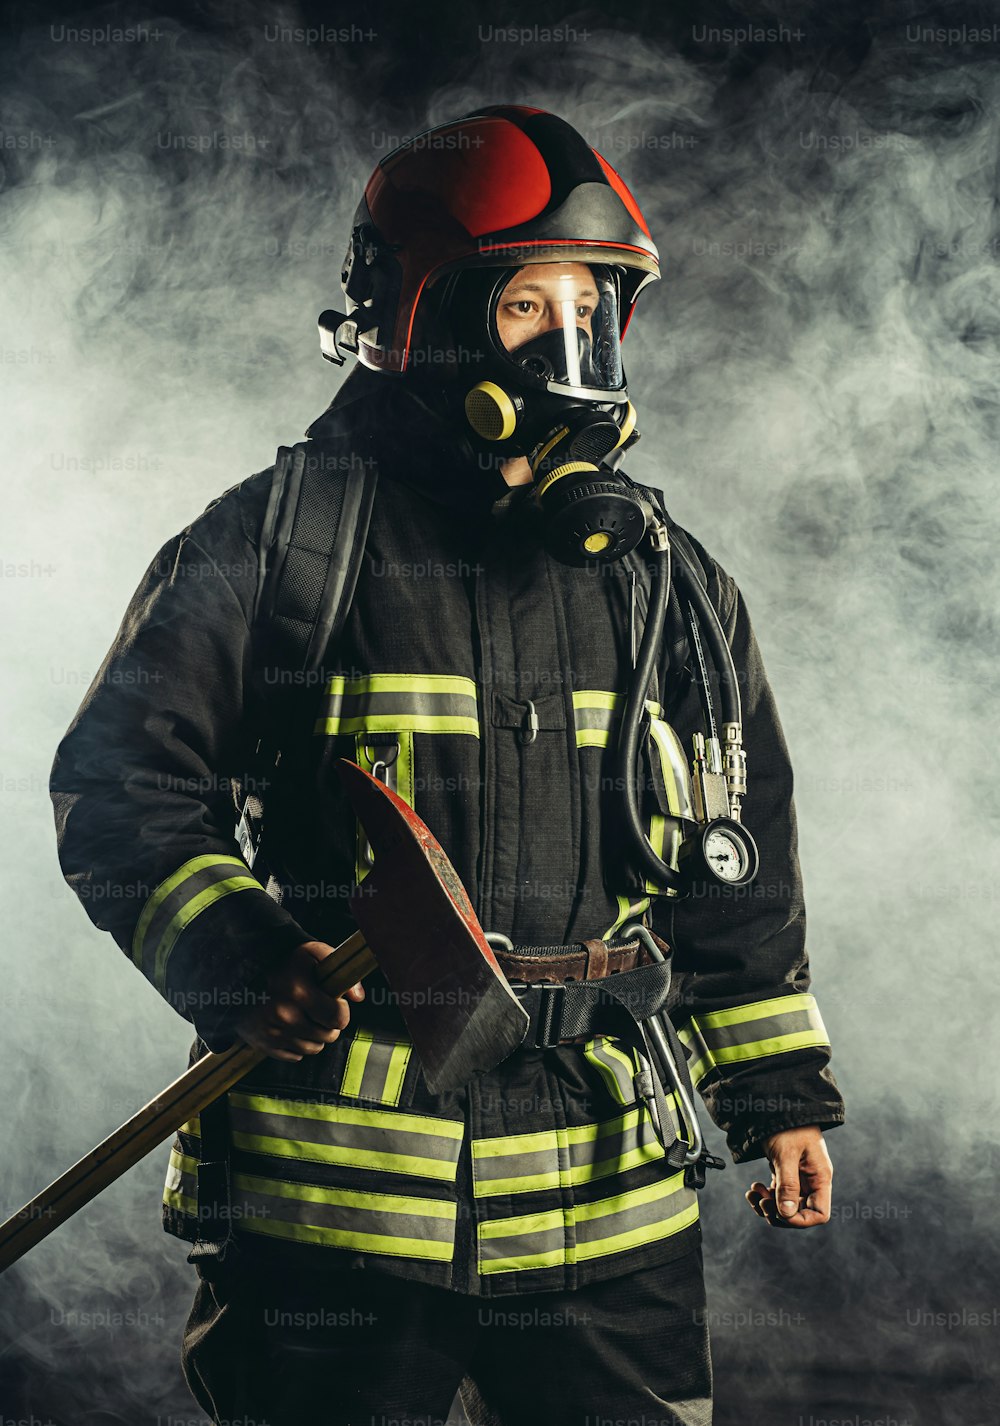 Un pompier d’âge moyen fort va sauver et protéger les gens du feu, portant un masque ou un casque spécial, un uniforme de protection